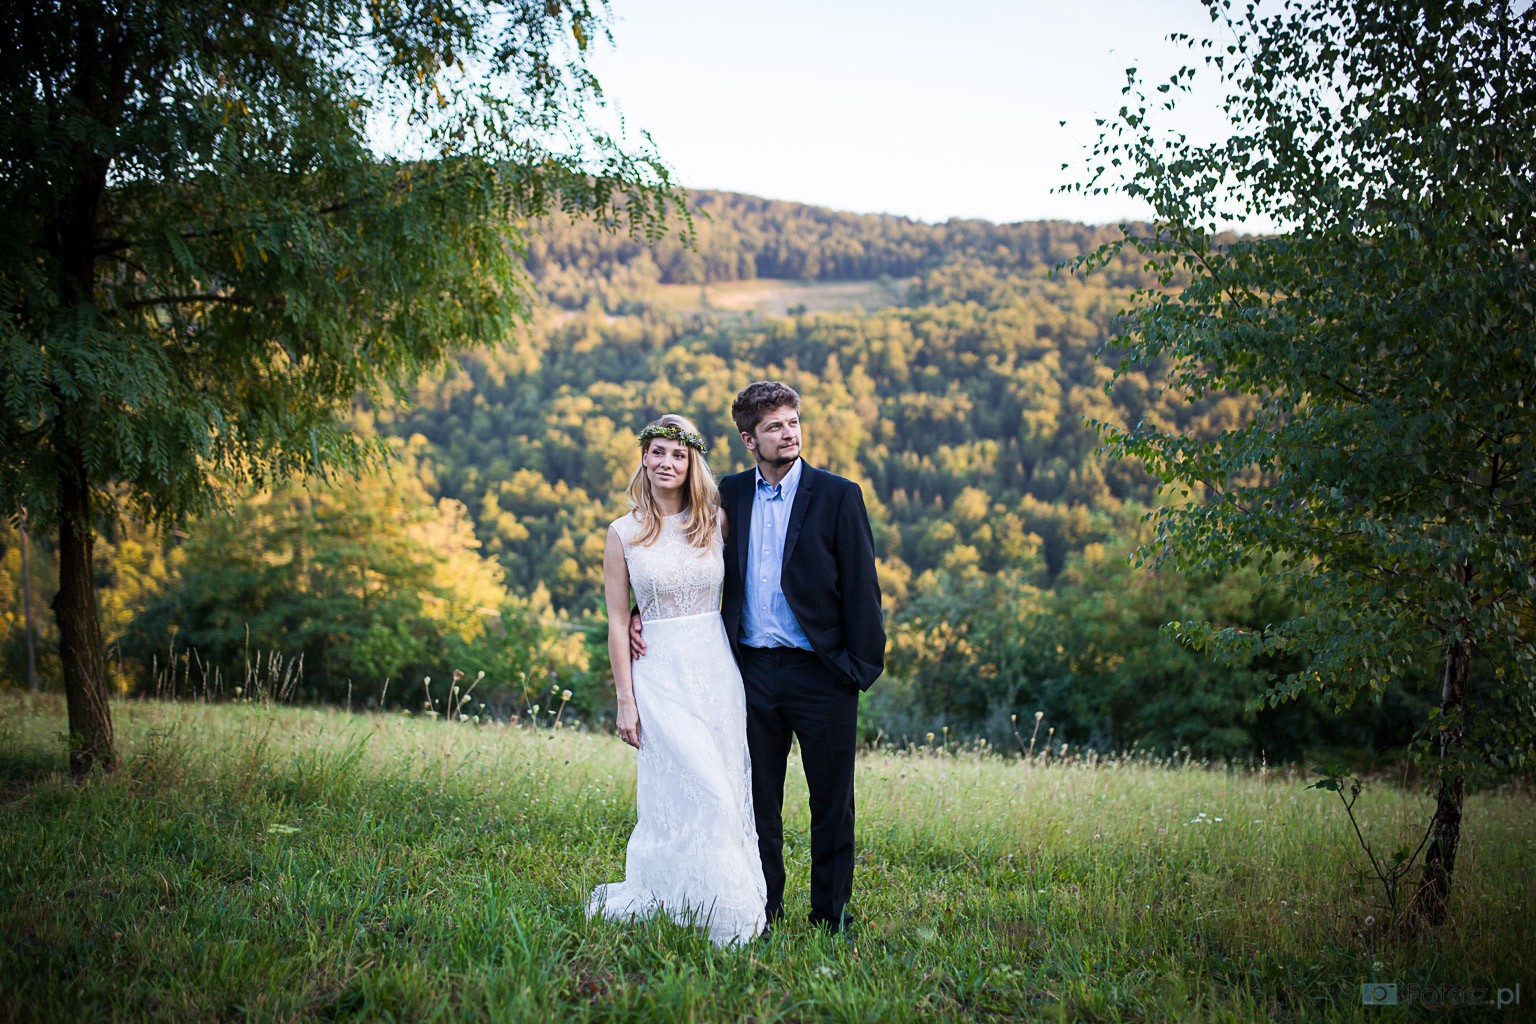 fotograf krakow szymon-blaszczyk-fotoszpl portfolio zdjecia slubne inspiracje wesele plener slubny sesja slubna